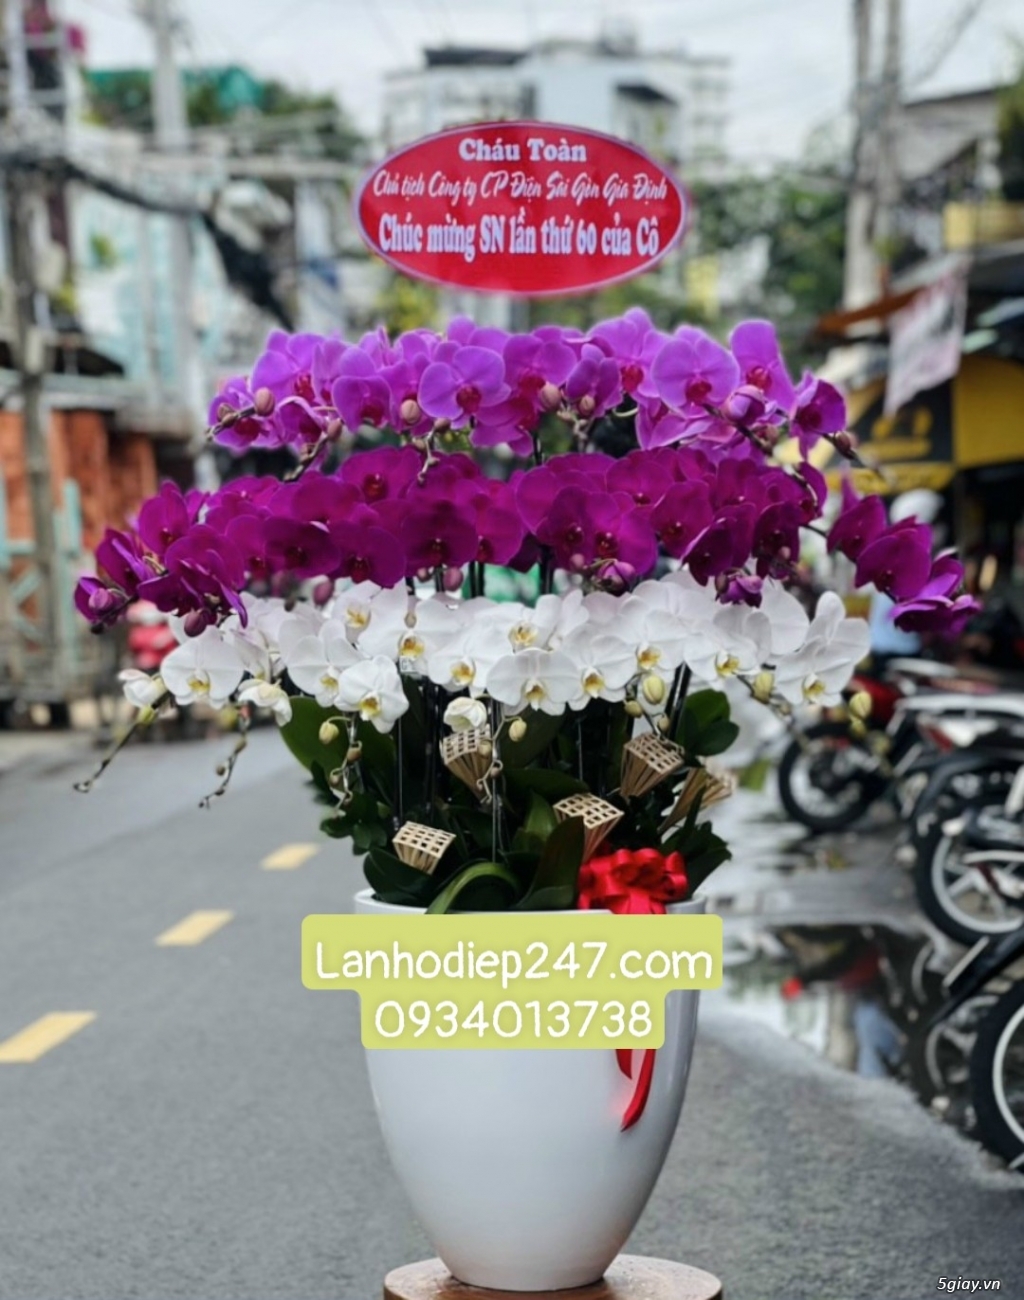 Shop hoa chuyên Lan Hồ Điệp cao cấp uy tín số 1 TPHCM - Hoa Lan 247 SG - 14